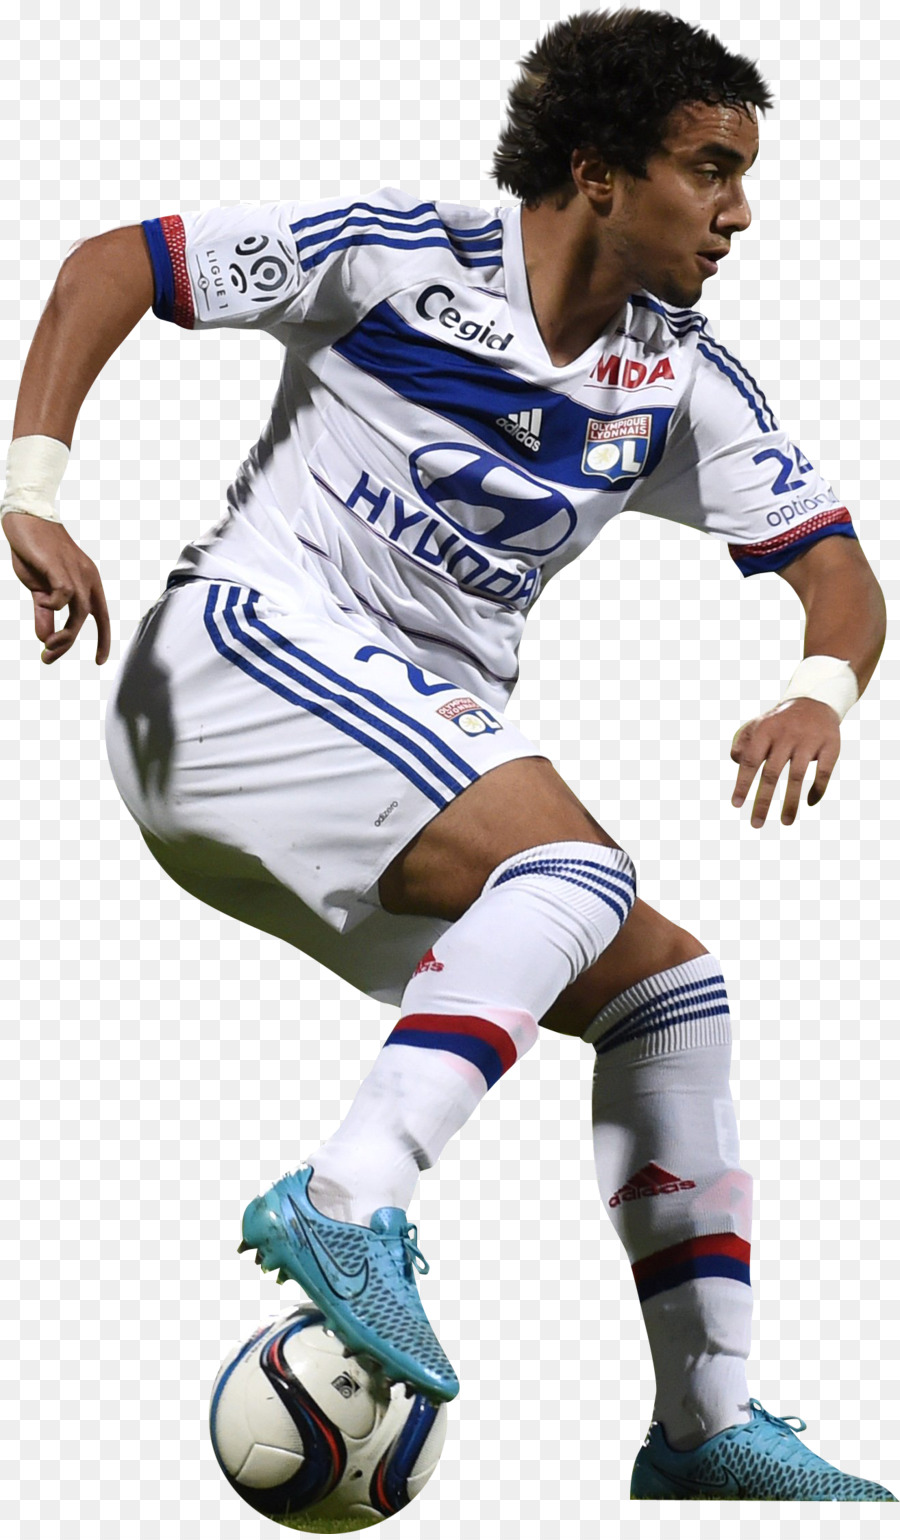 Besiktas J. K. Fußball-Nationalmannschaft, sport, Olympique Lyonnais Fußball-Team-Spieler Rafael - casemiro Brasilien